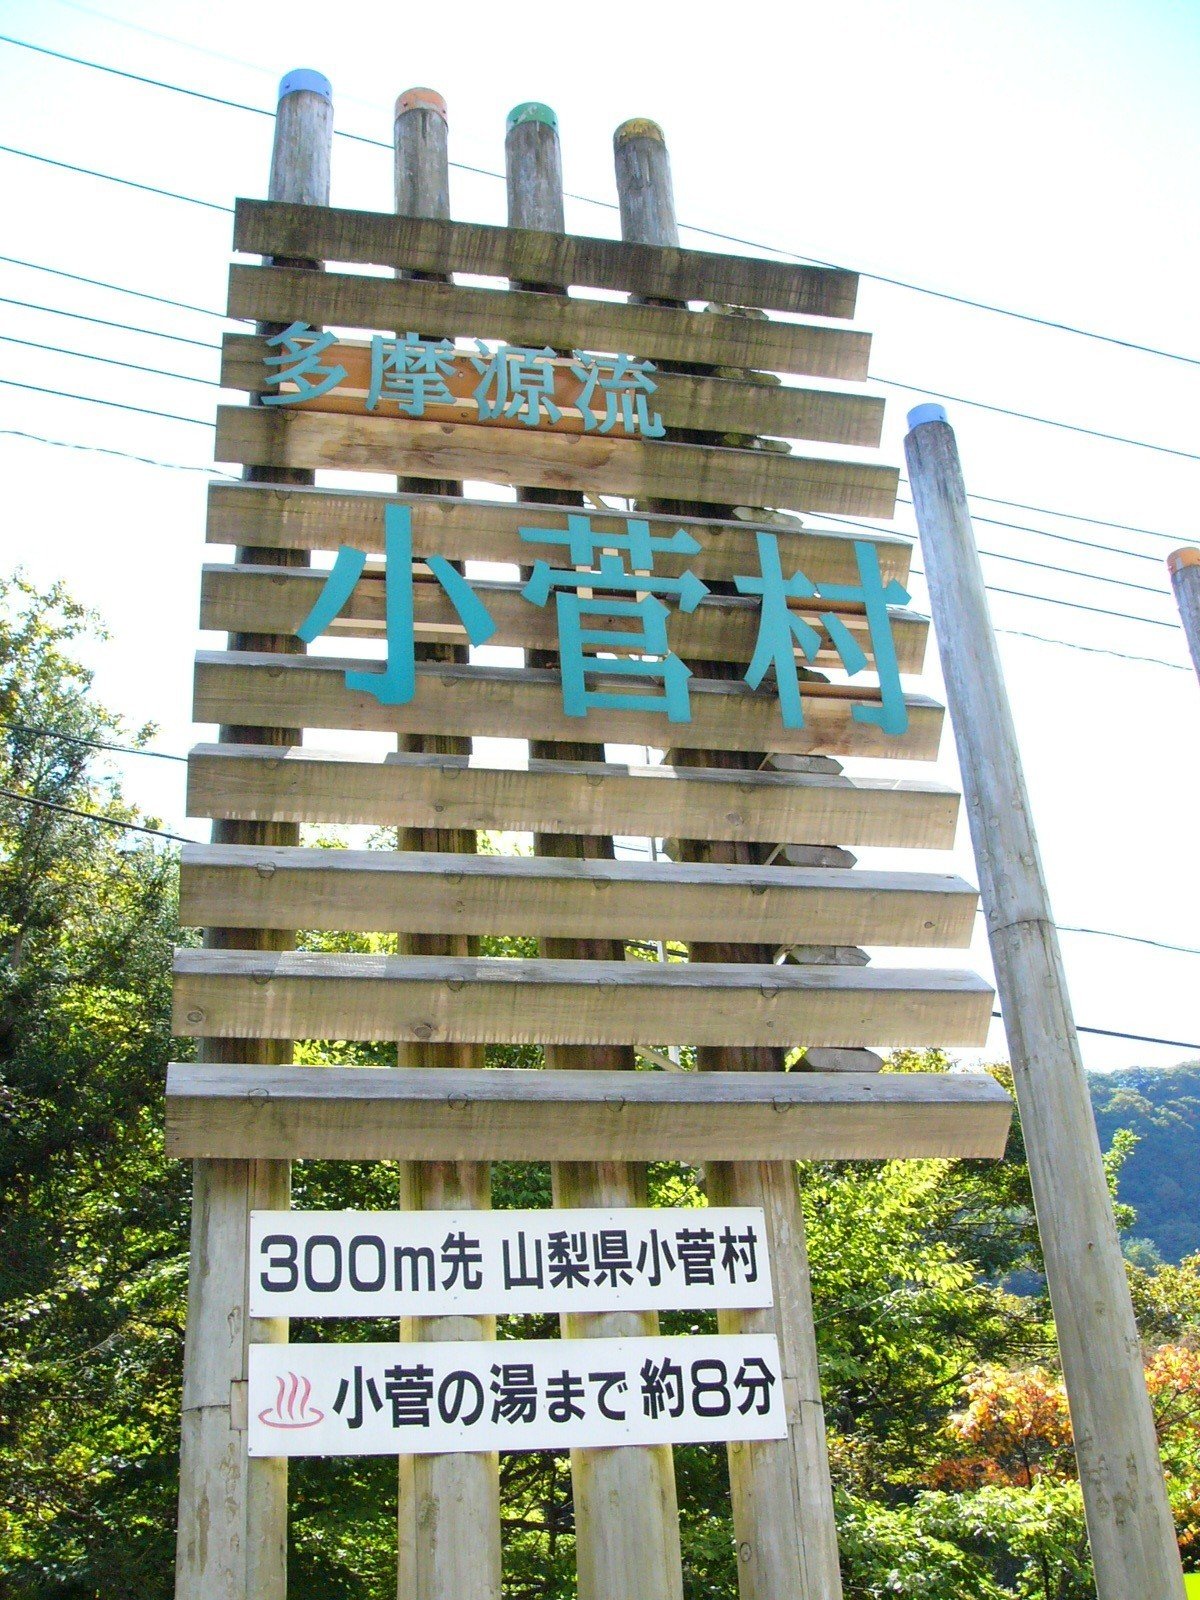 小菅村の看板 (3)